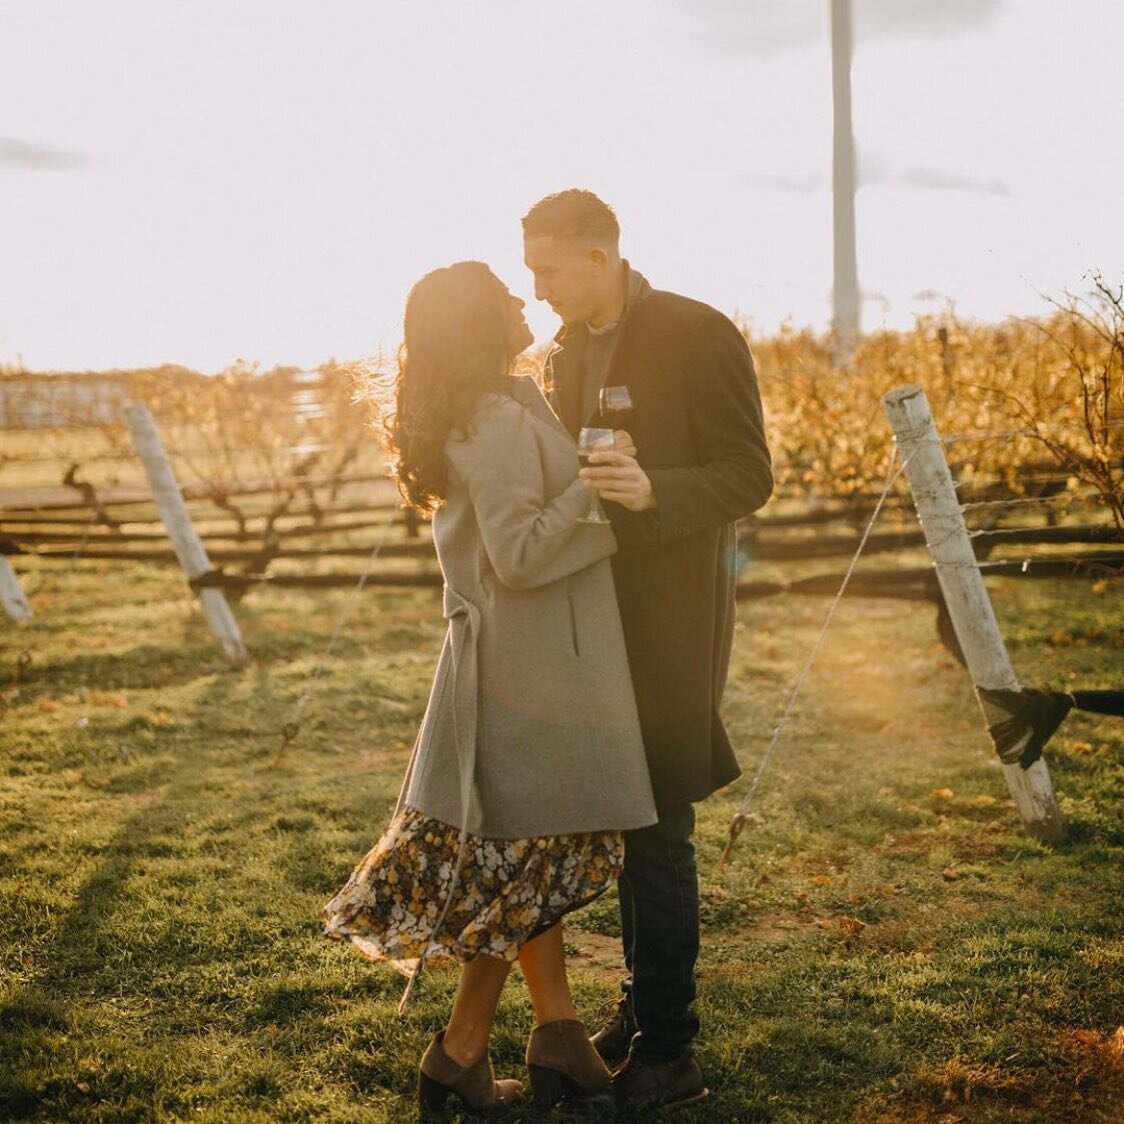 A #sunsoaked dance in a romantic #vineyard makes for a perfect #engagement #photoshoot. 🍇🍷☀️

.
.
.
.
.
.
#Engagementsession #engaged #LIVineyards #NOFOLI #longislandwedding #PindarVineyard #weddingseason2021 #bride #bridalbeauty #bridalhair #weddi